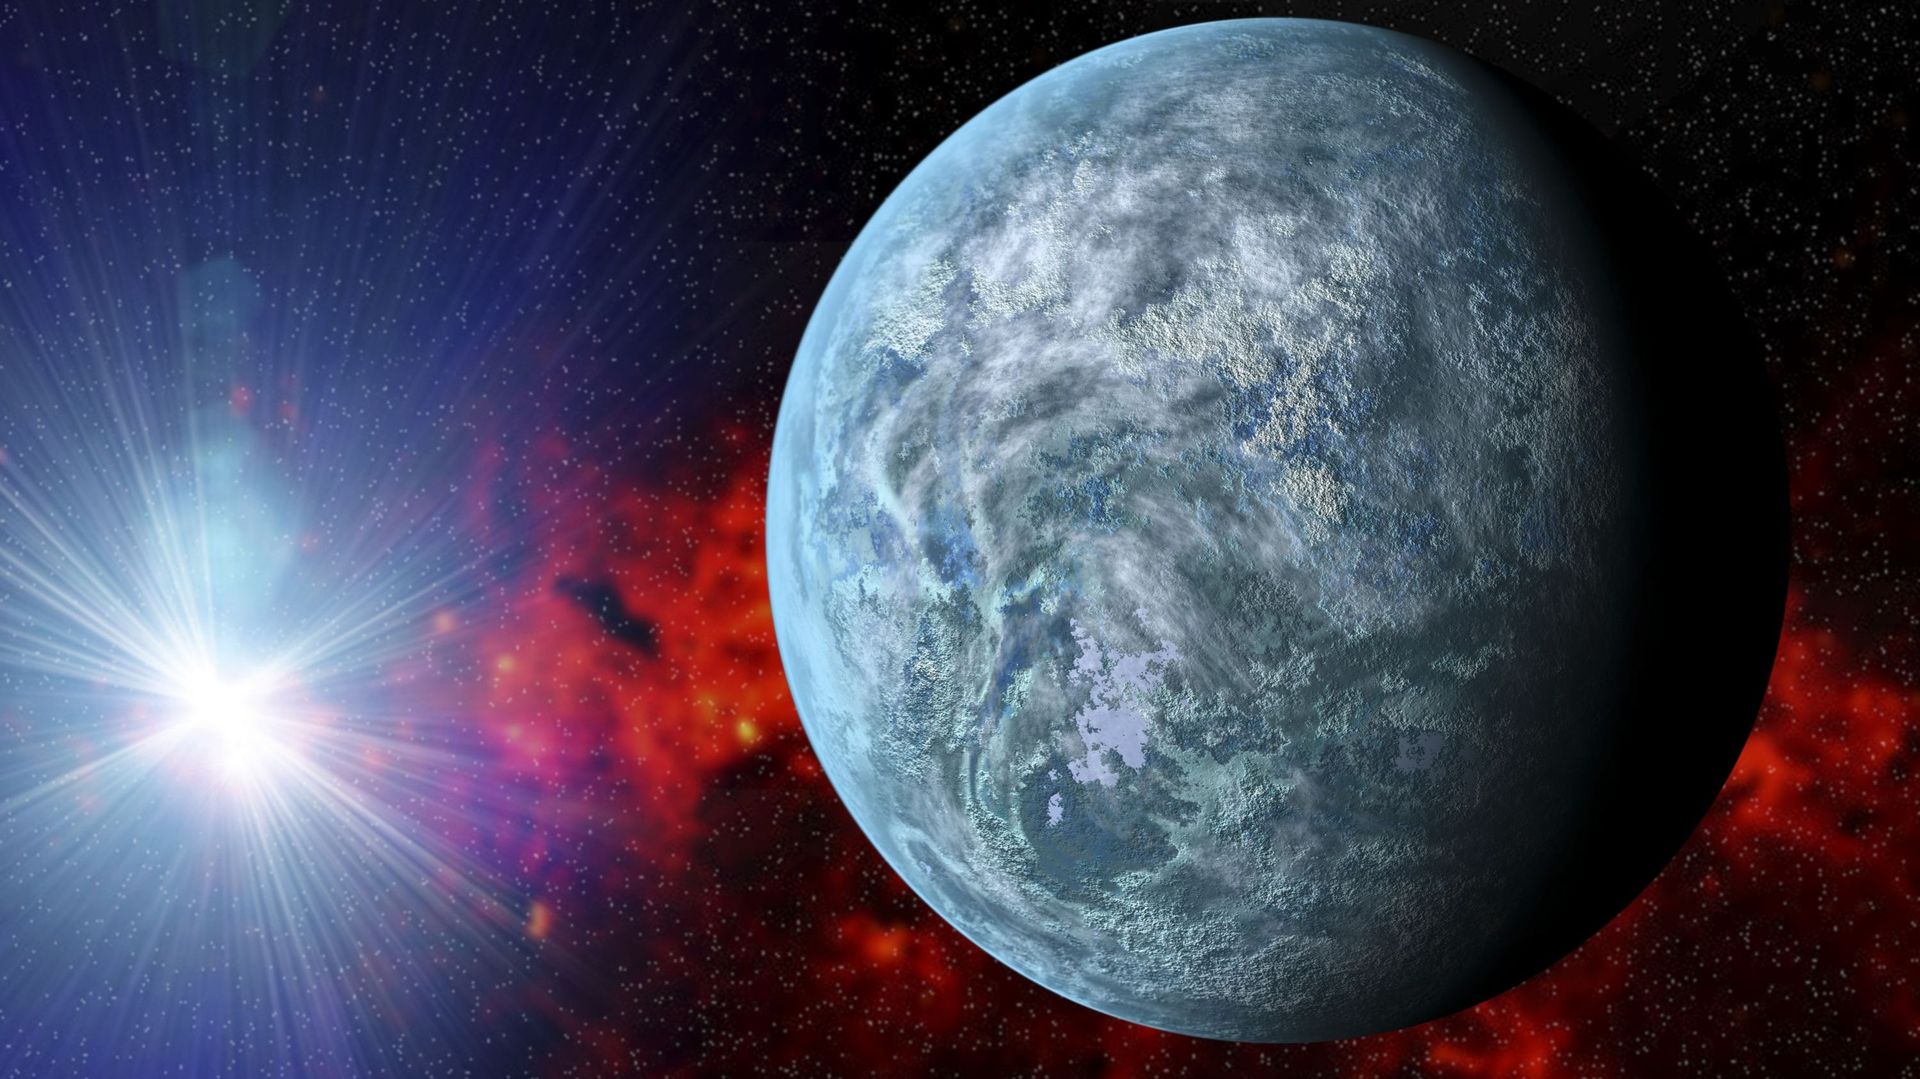 Le télescope James Webb a découvert une planète qui ressemble fort à la Terre à seulement 41 années-lumière